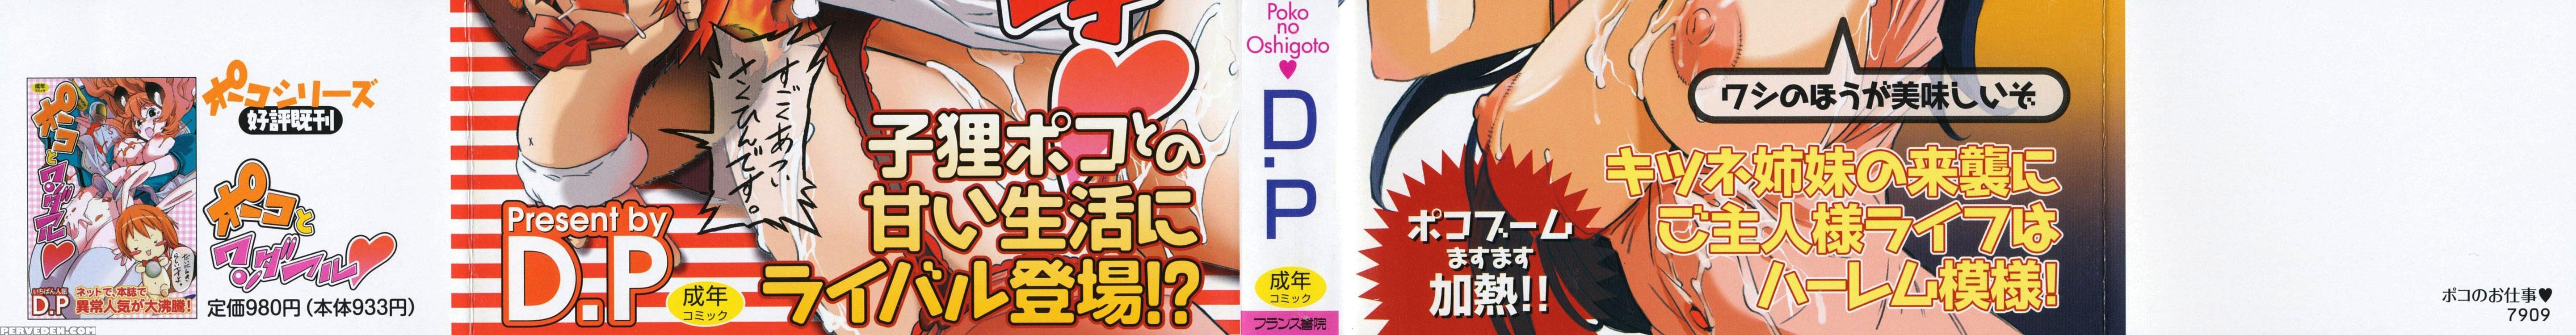 Poko No Oshigoto 12